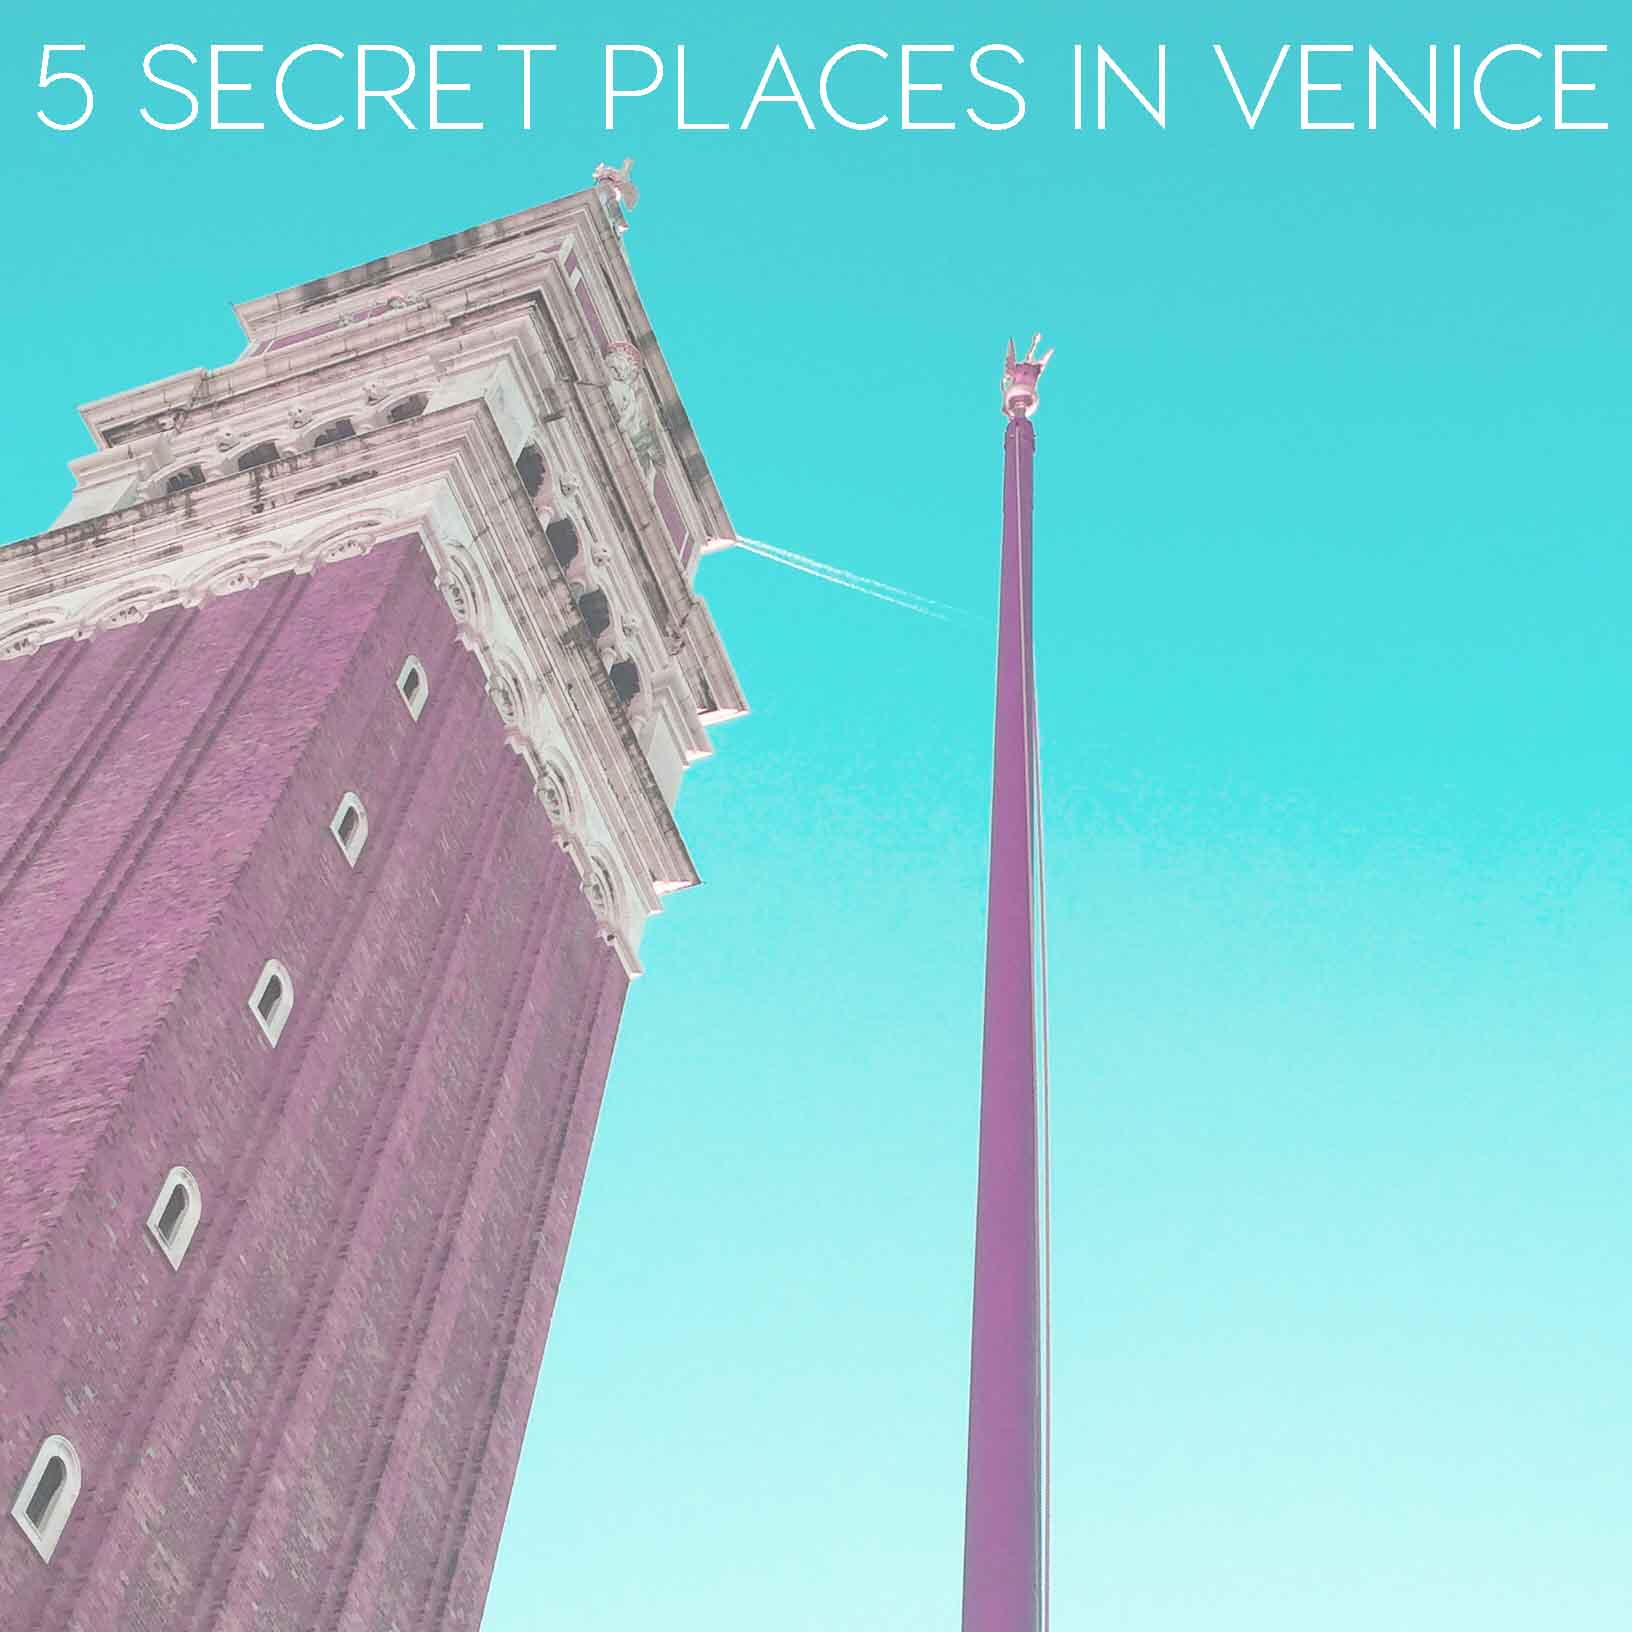 Louis Vuitton Secret Places: Venice - Schedule